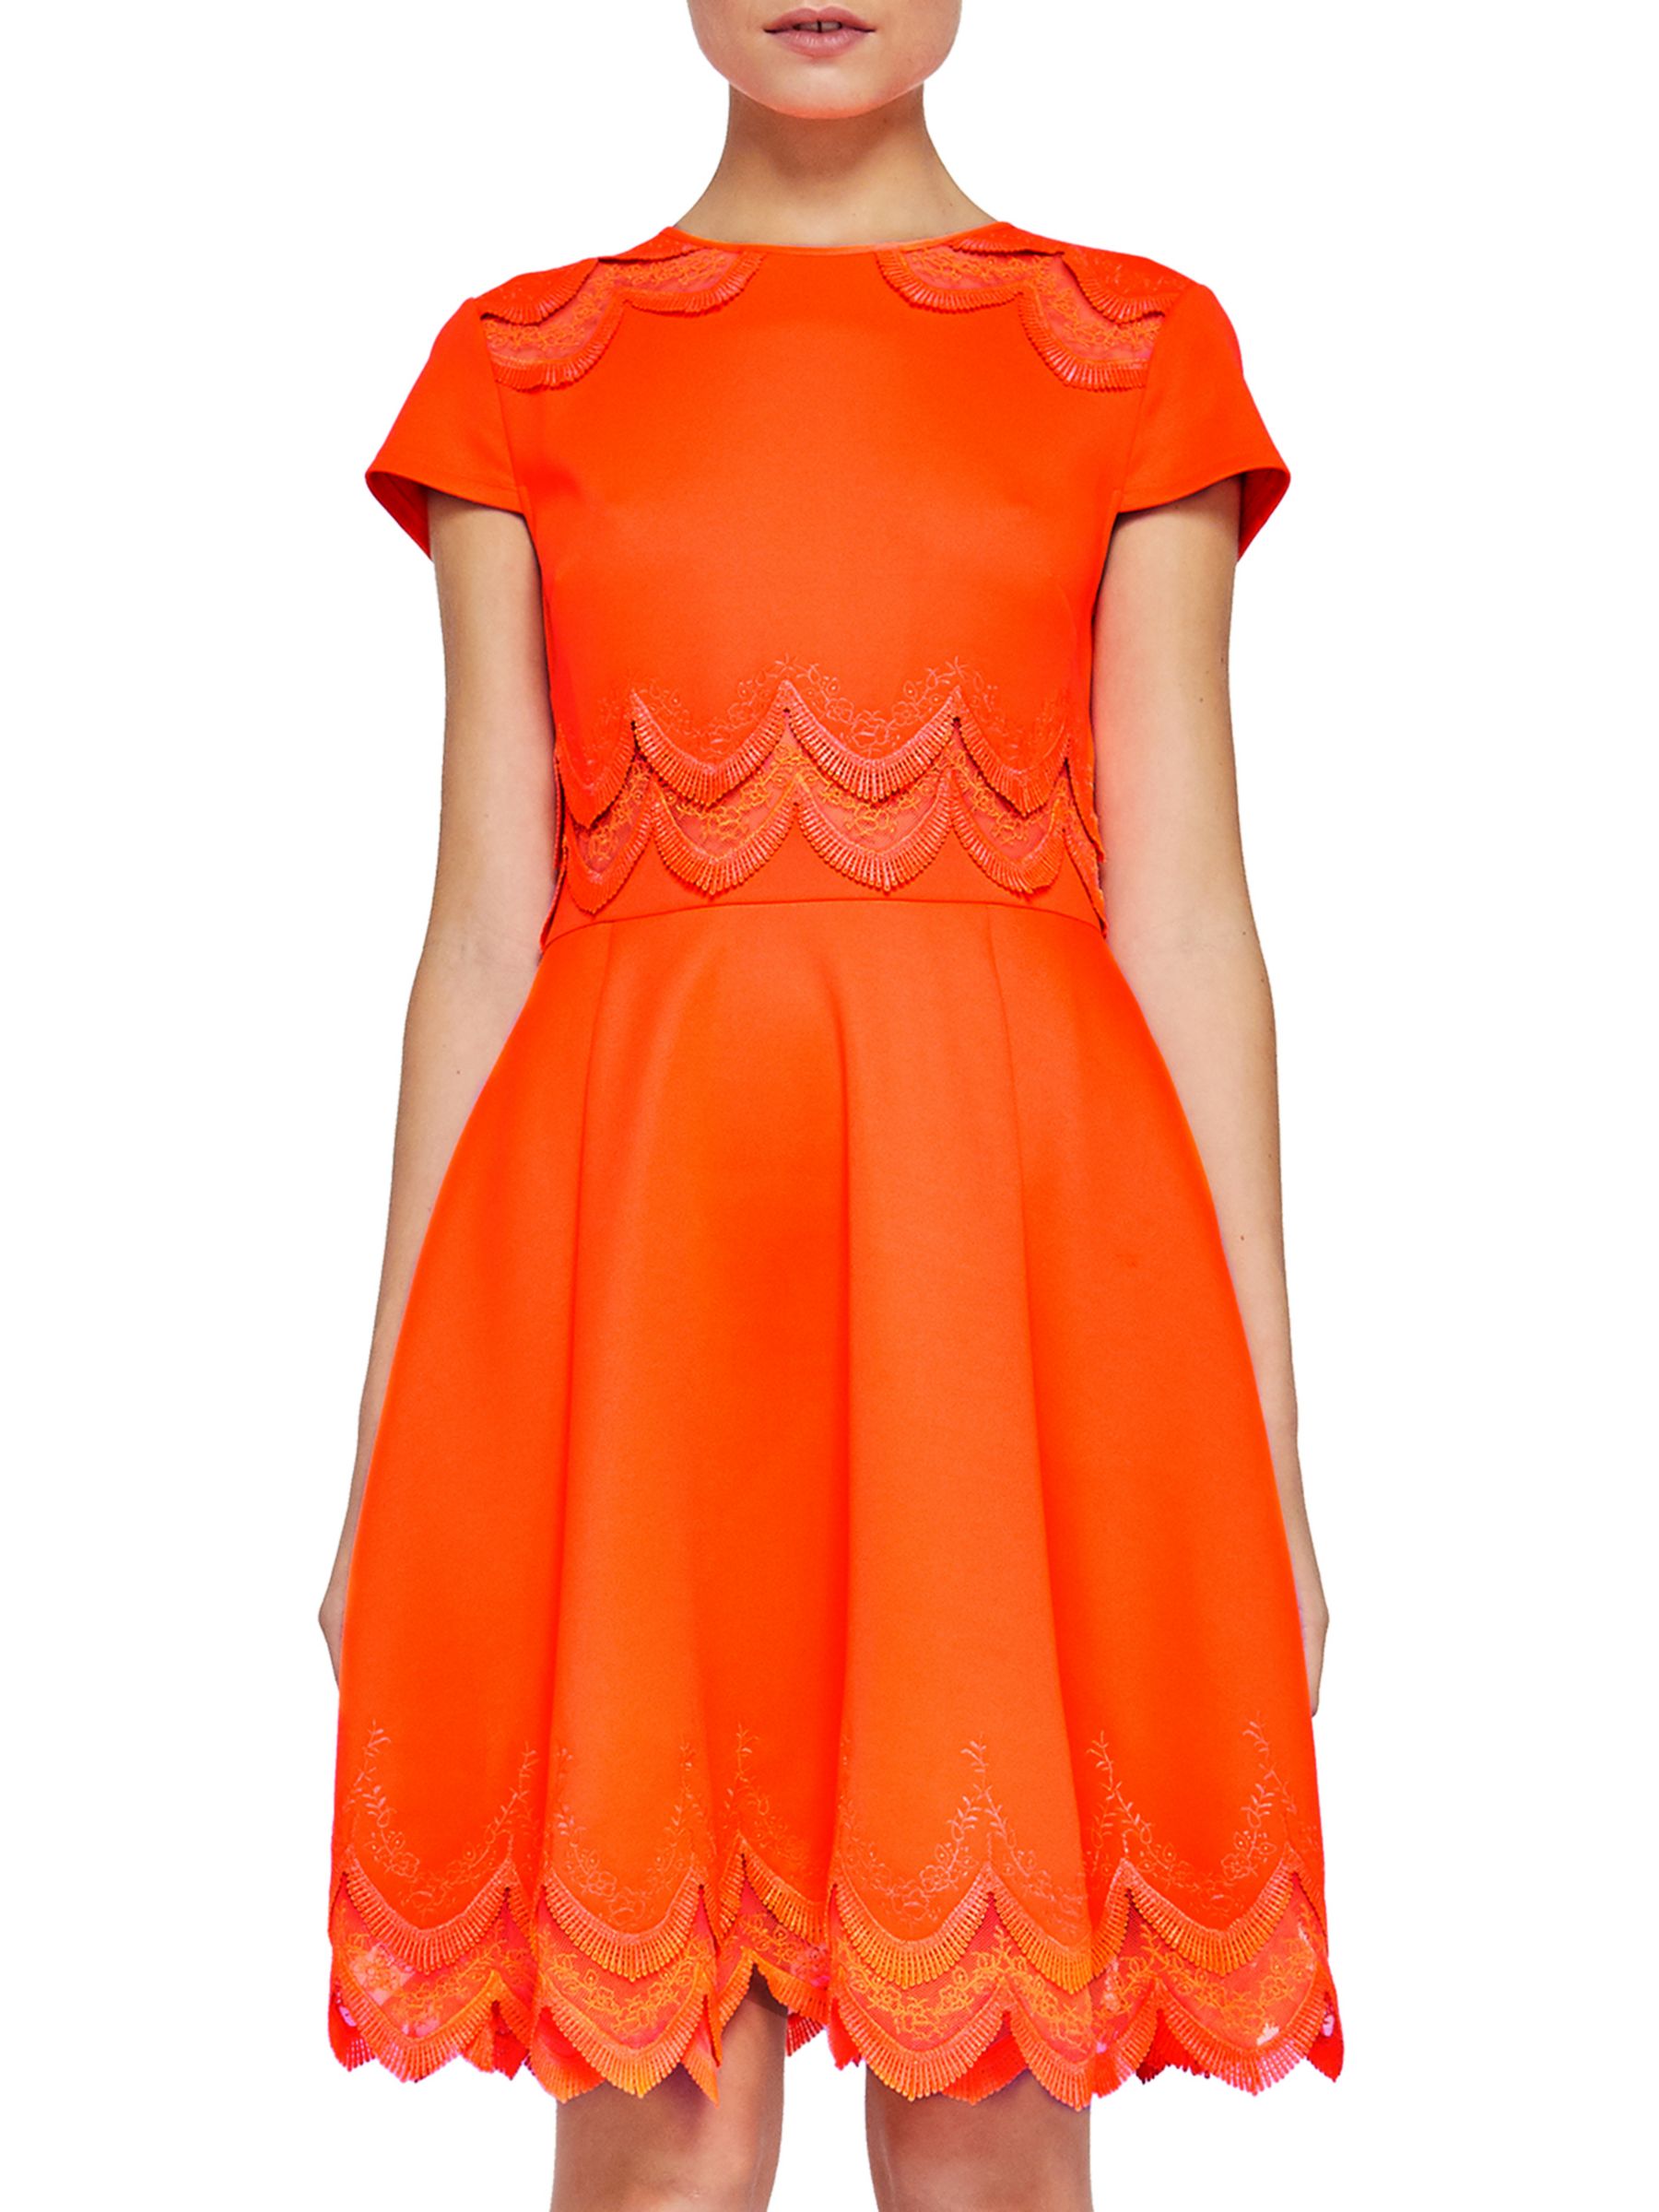 ted baker orange dress